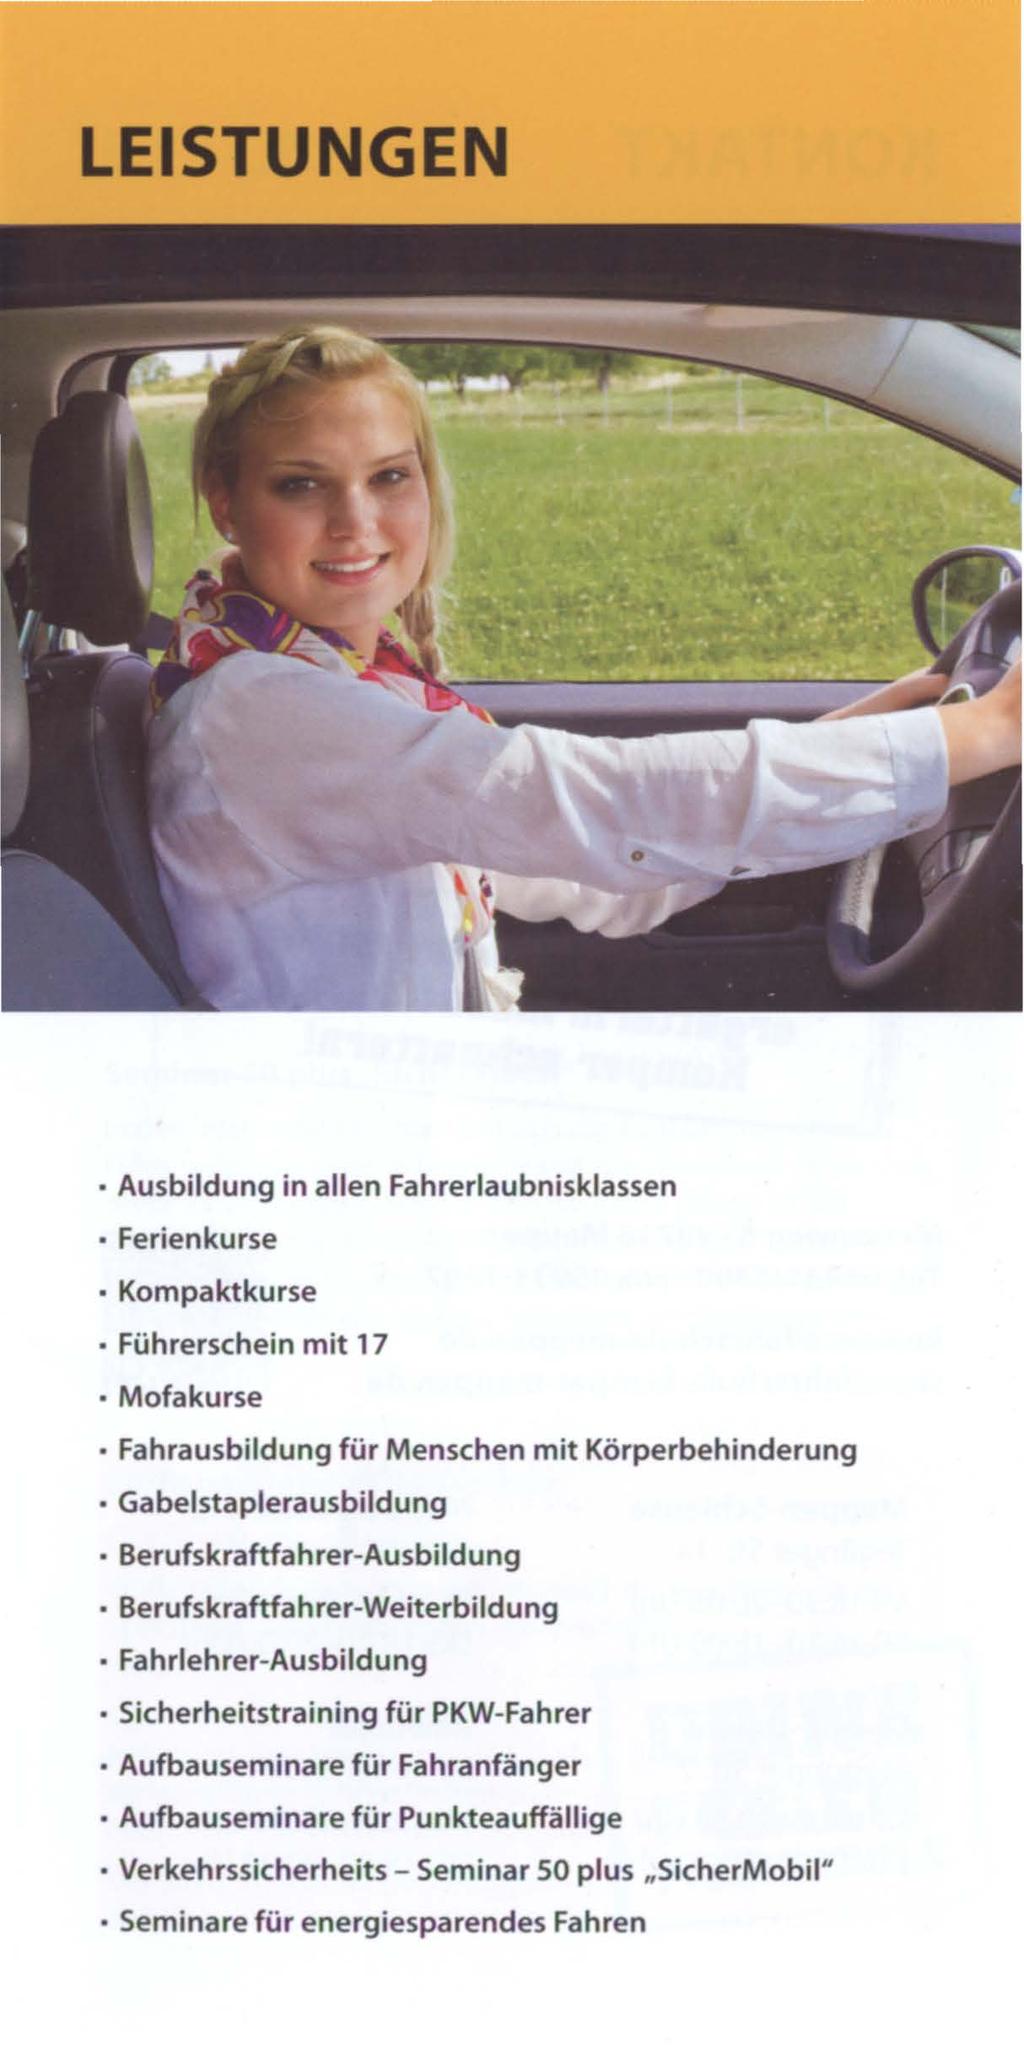 LEISTUNGEN Ausbildung in allen Fahrerlaubnisklassen Ferienkurse Kompaktkurse Führerschein mit 17 Mofakurse Fahrausbildung für Menschen mit Körperbehinderung Gabelstaplerausbildung